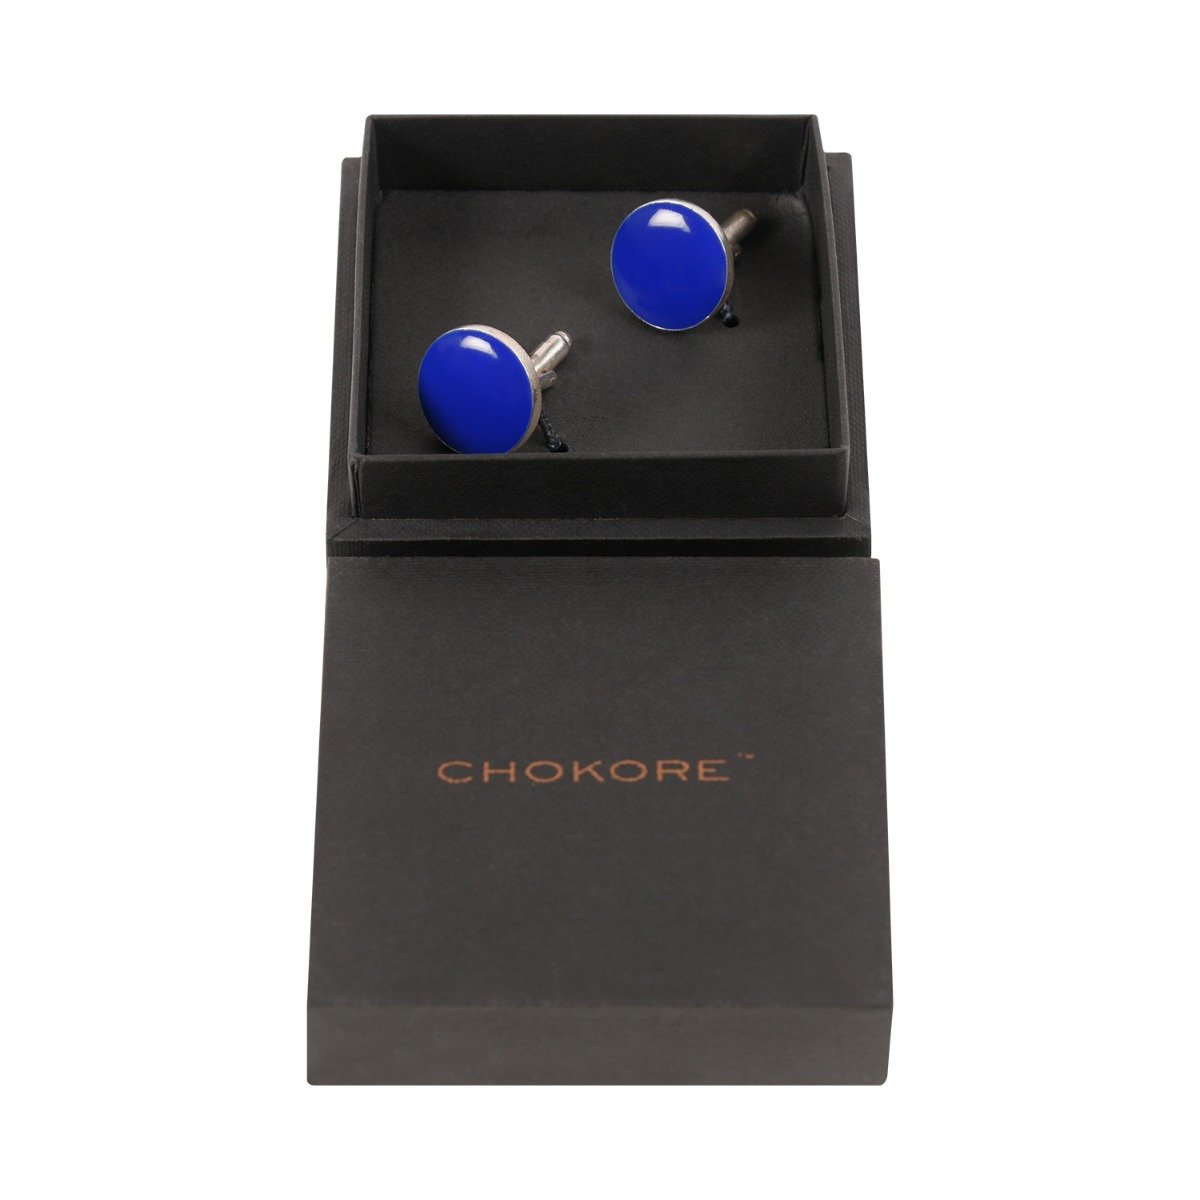 Chokore Cobalt Blue color Round shape Cufflinks